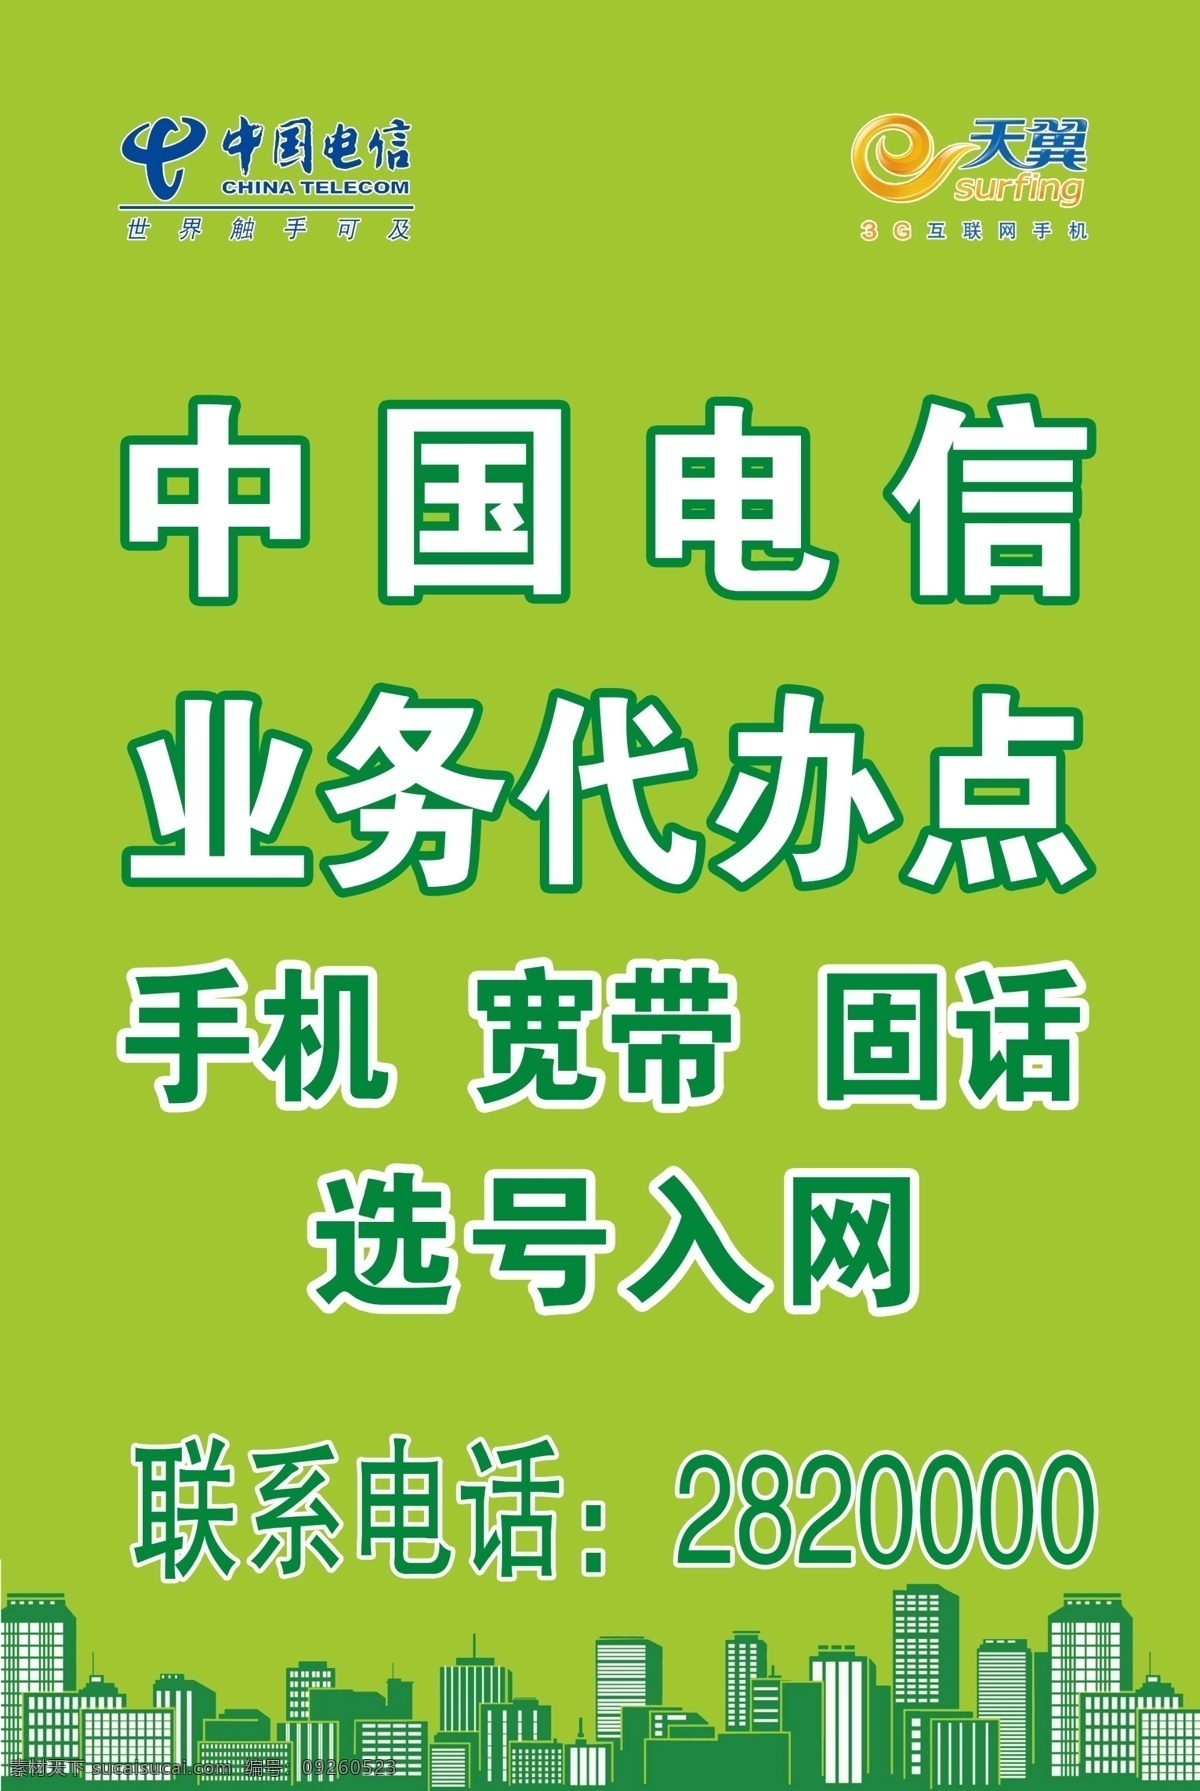 广告设计模板 天翼 网络 小区 预告 源文件 中国电信 模板下载 海报 网费 其他海报设计